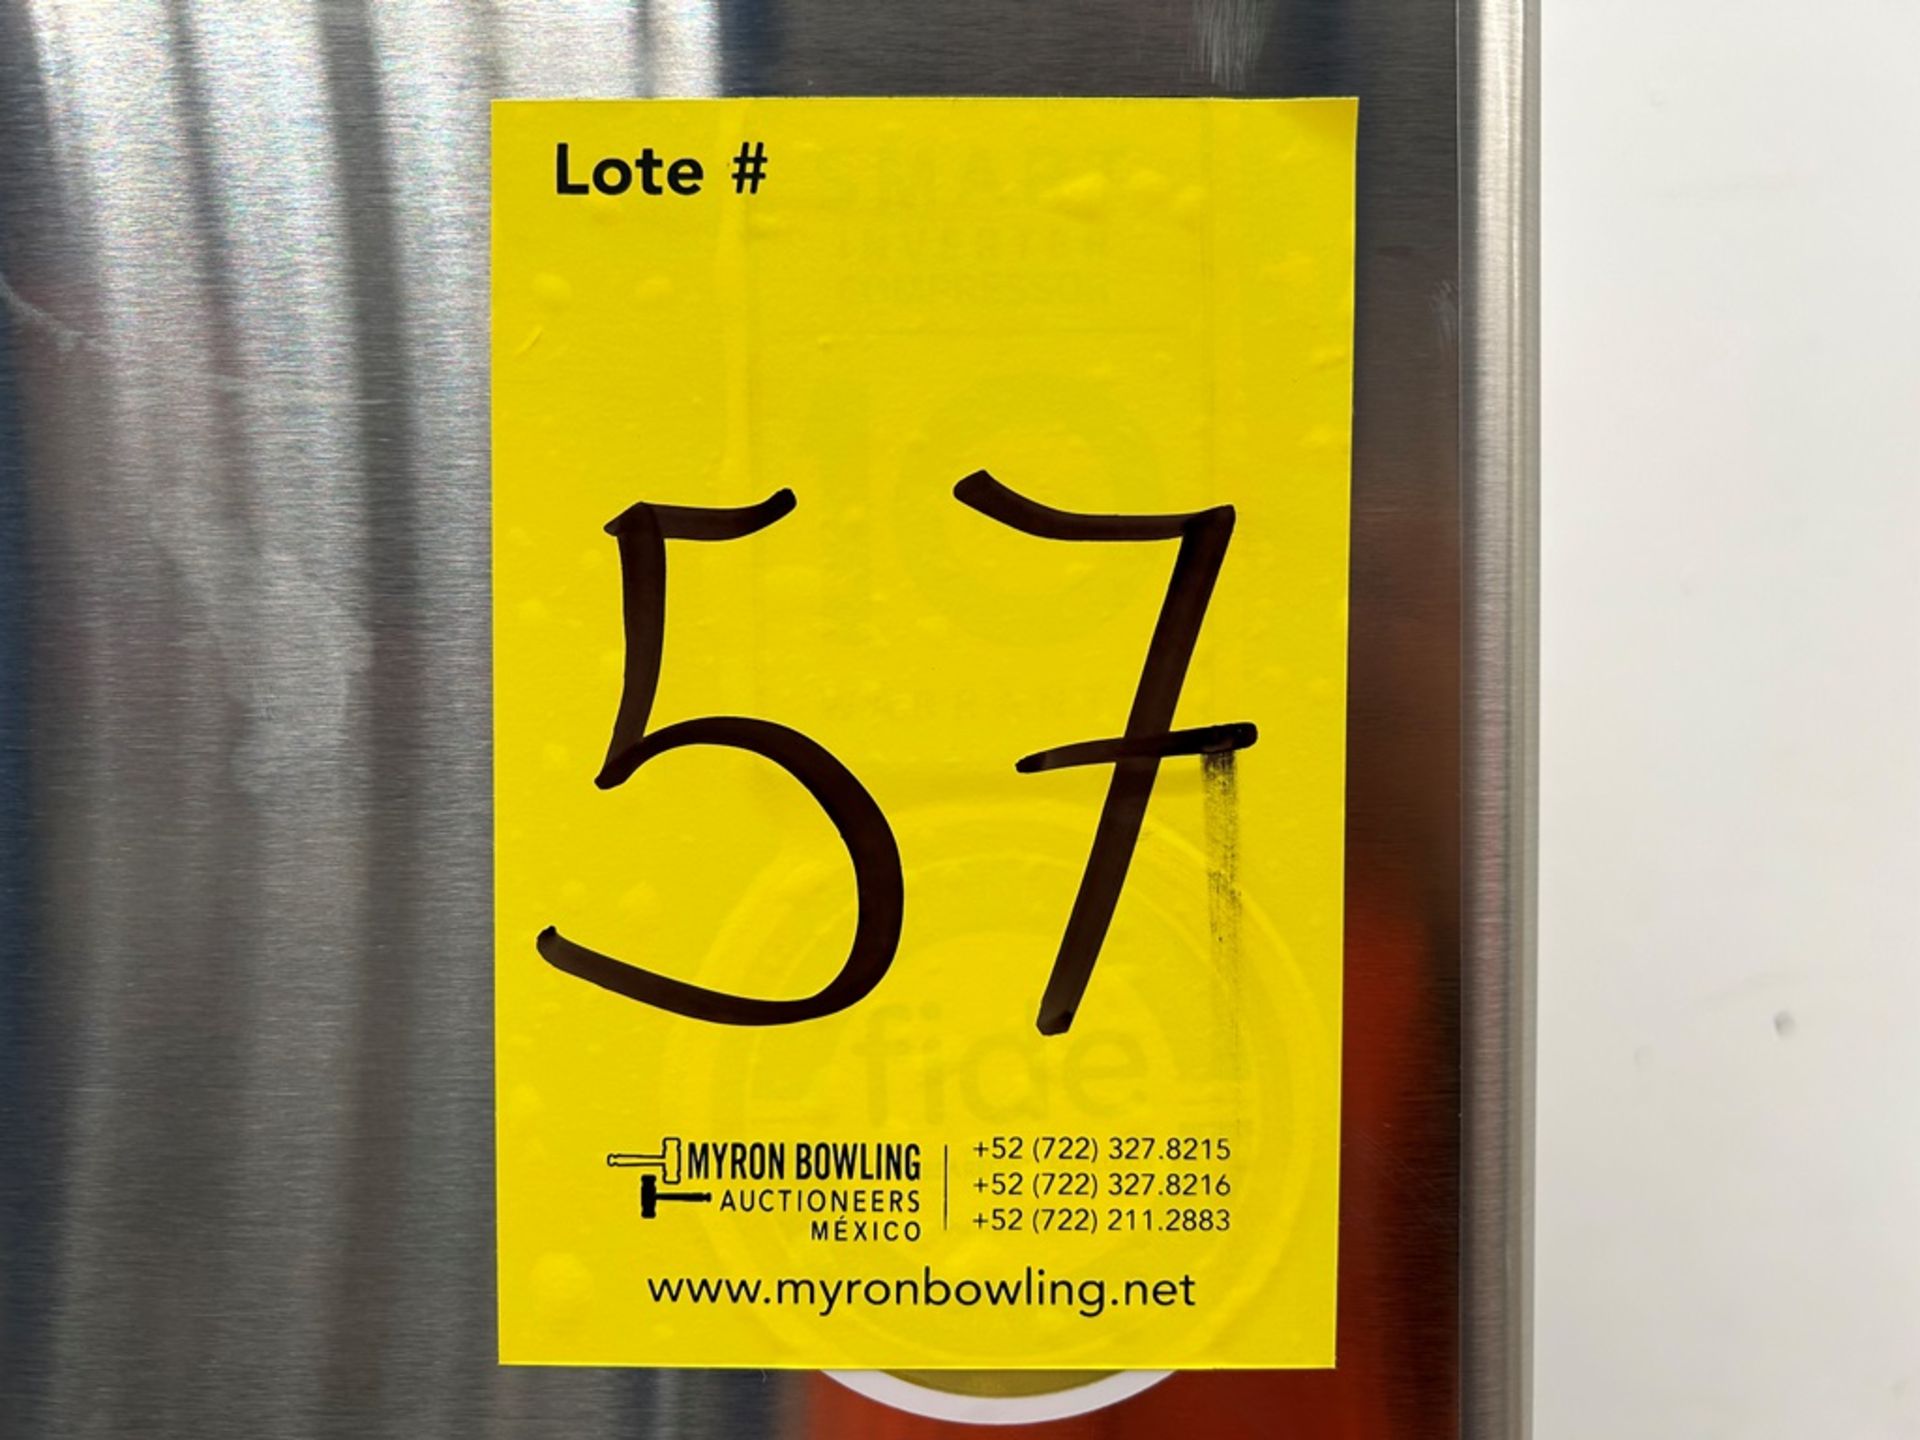 (NUEVO) Refrigerador Marca LG, Modelo LT57BPSX, Serie 2D689, Color GRIS - Image 7 of 7